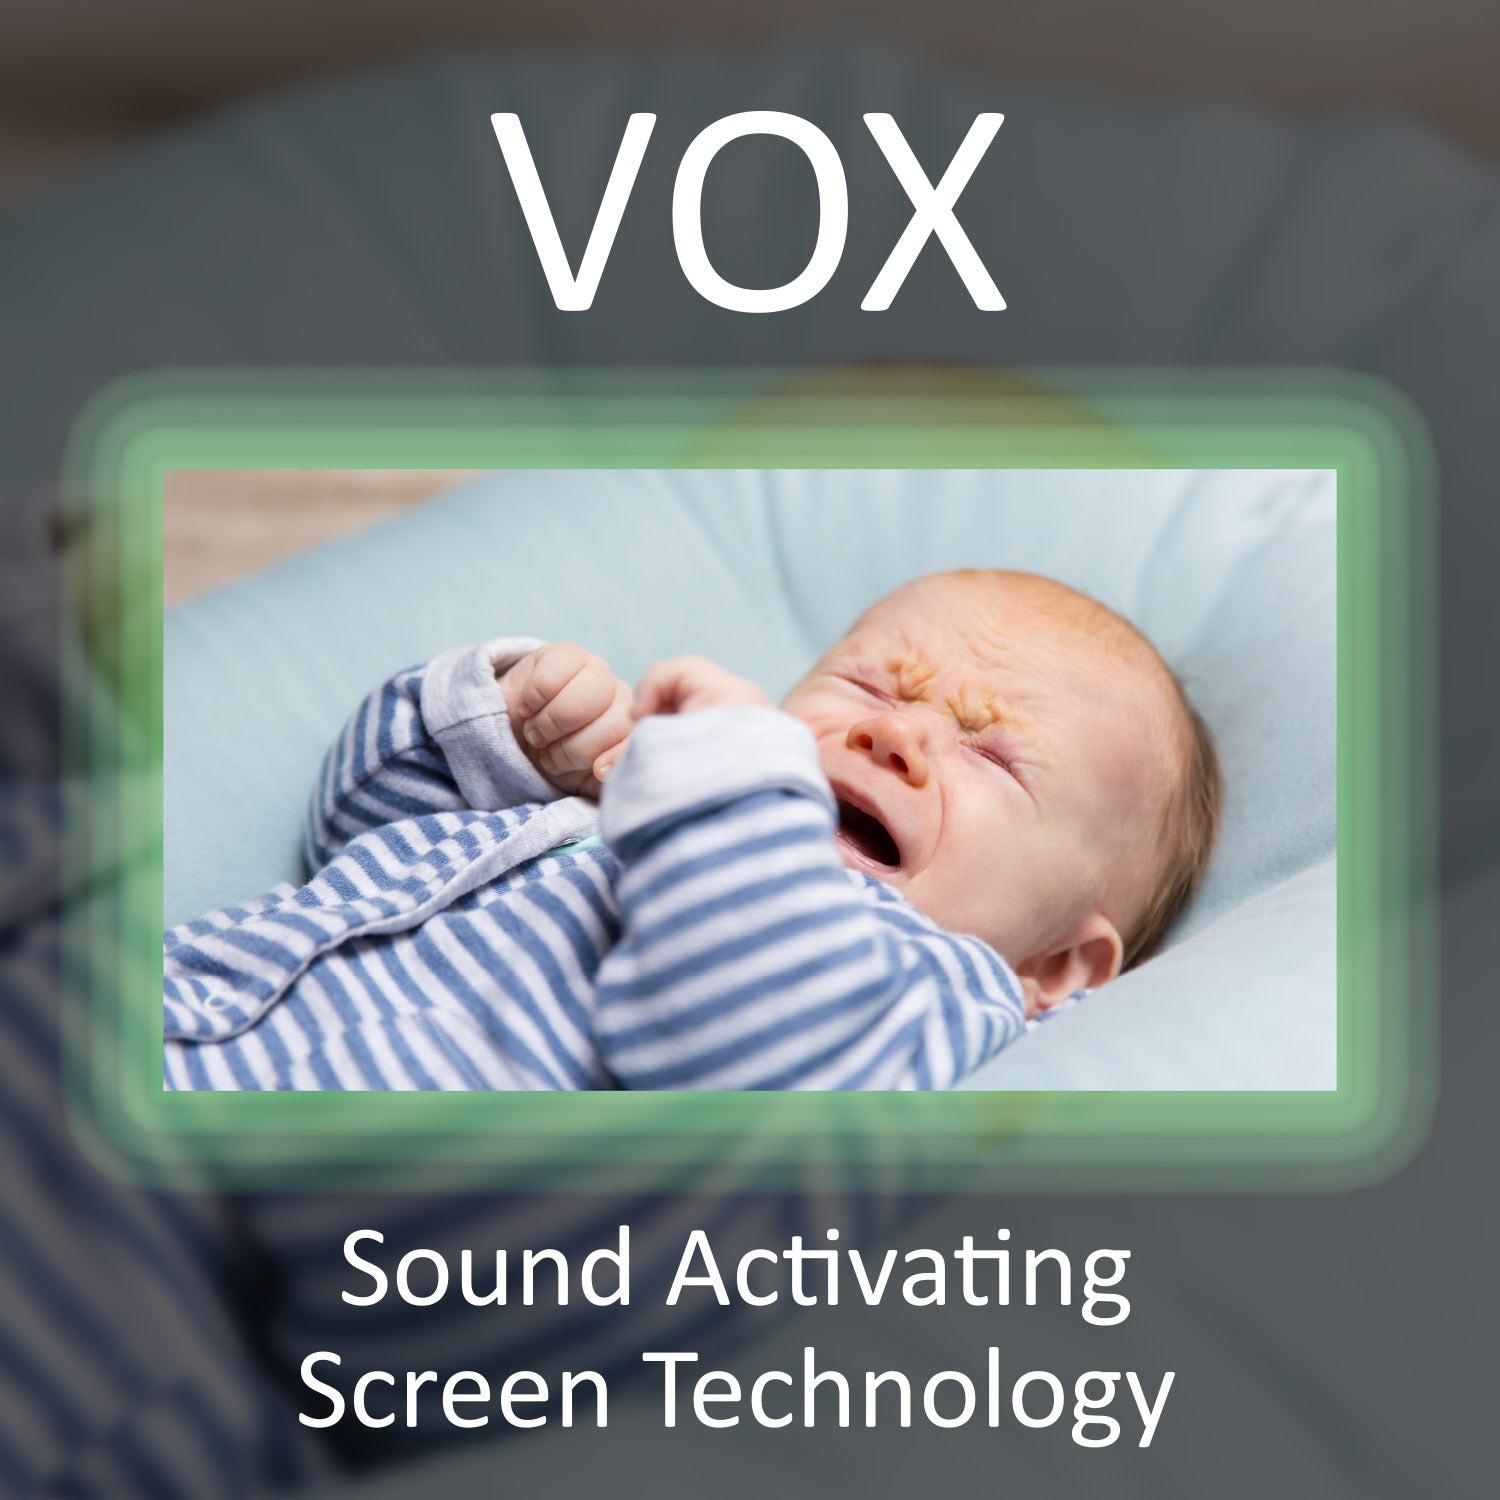 AXVUE E612 Video Baby Monitor